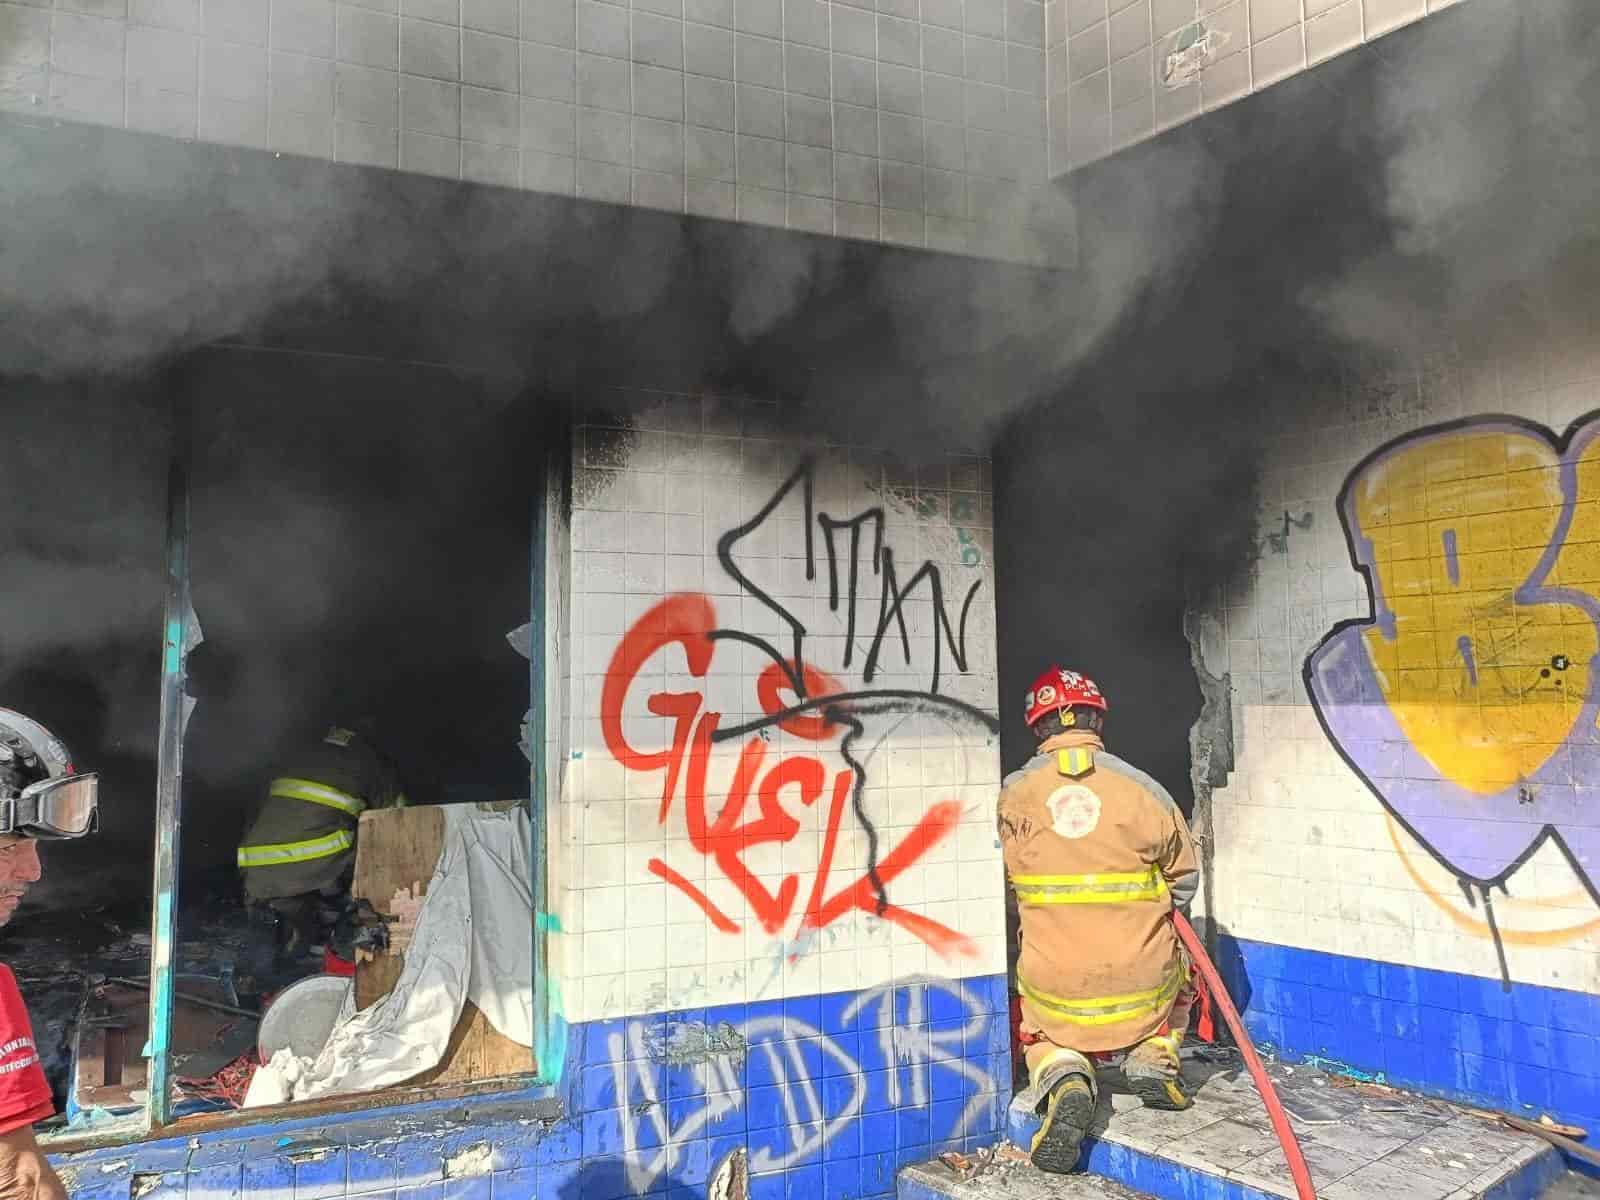 El incendio de basura en un negocio abandonado, presuntamente provocado por una persona en situación de calle, movilizó ayer a elementos de Protección Civil de Monterrey, Bomberos de Nuevo León y efectivos de la policía municipal, en la Colonia Reforma.